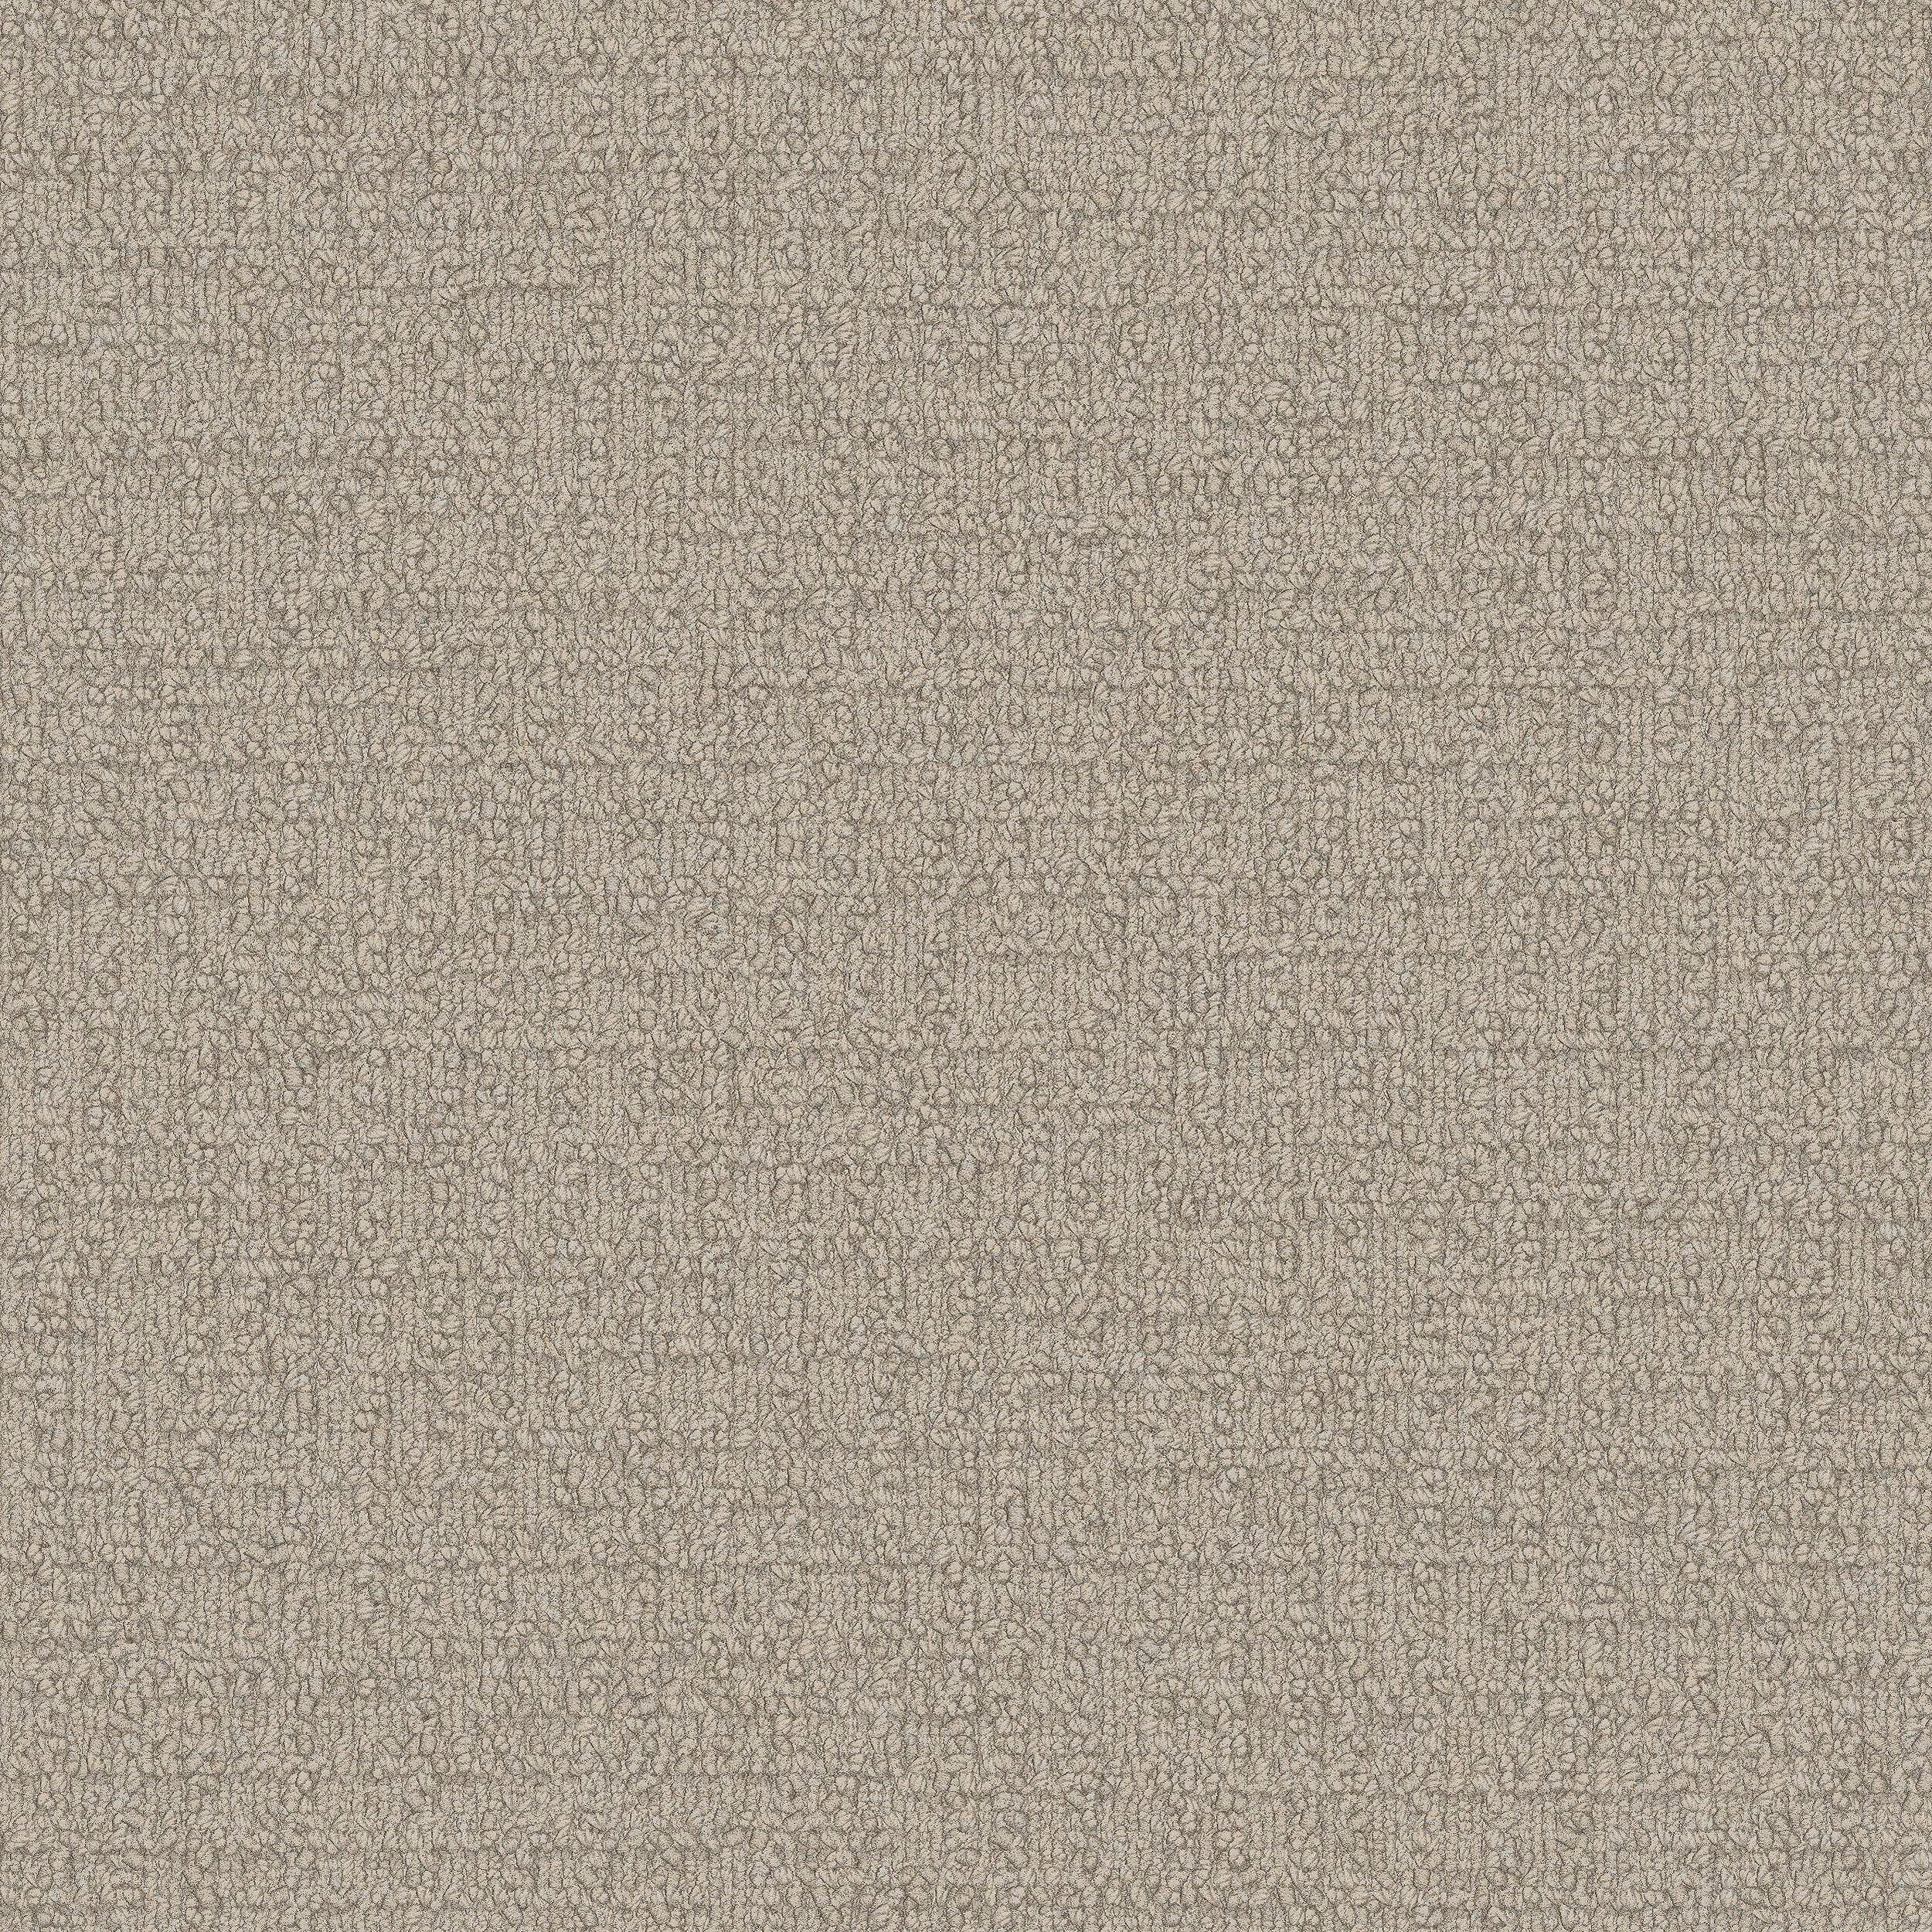 Monochrome Carpet Tile In Cream numéro d’image 9